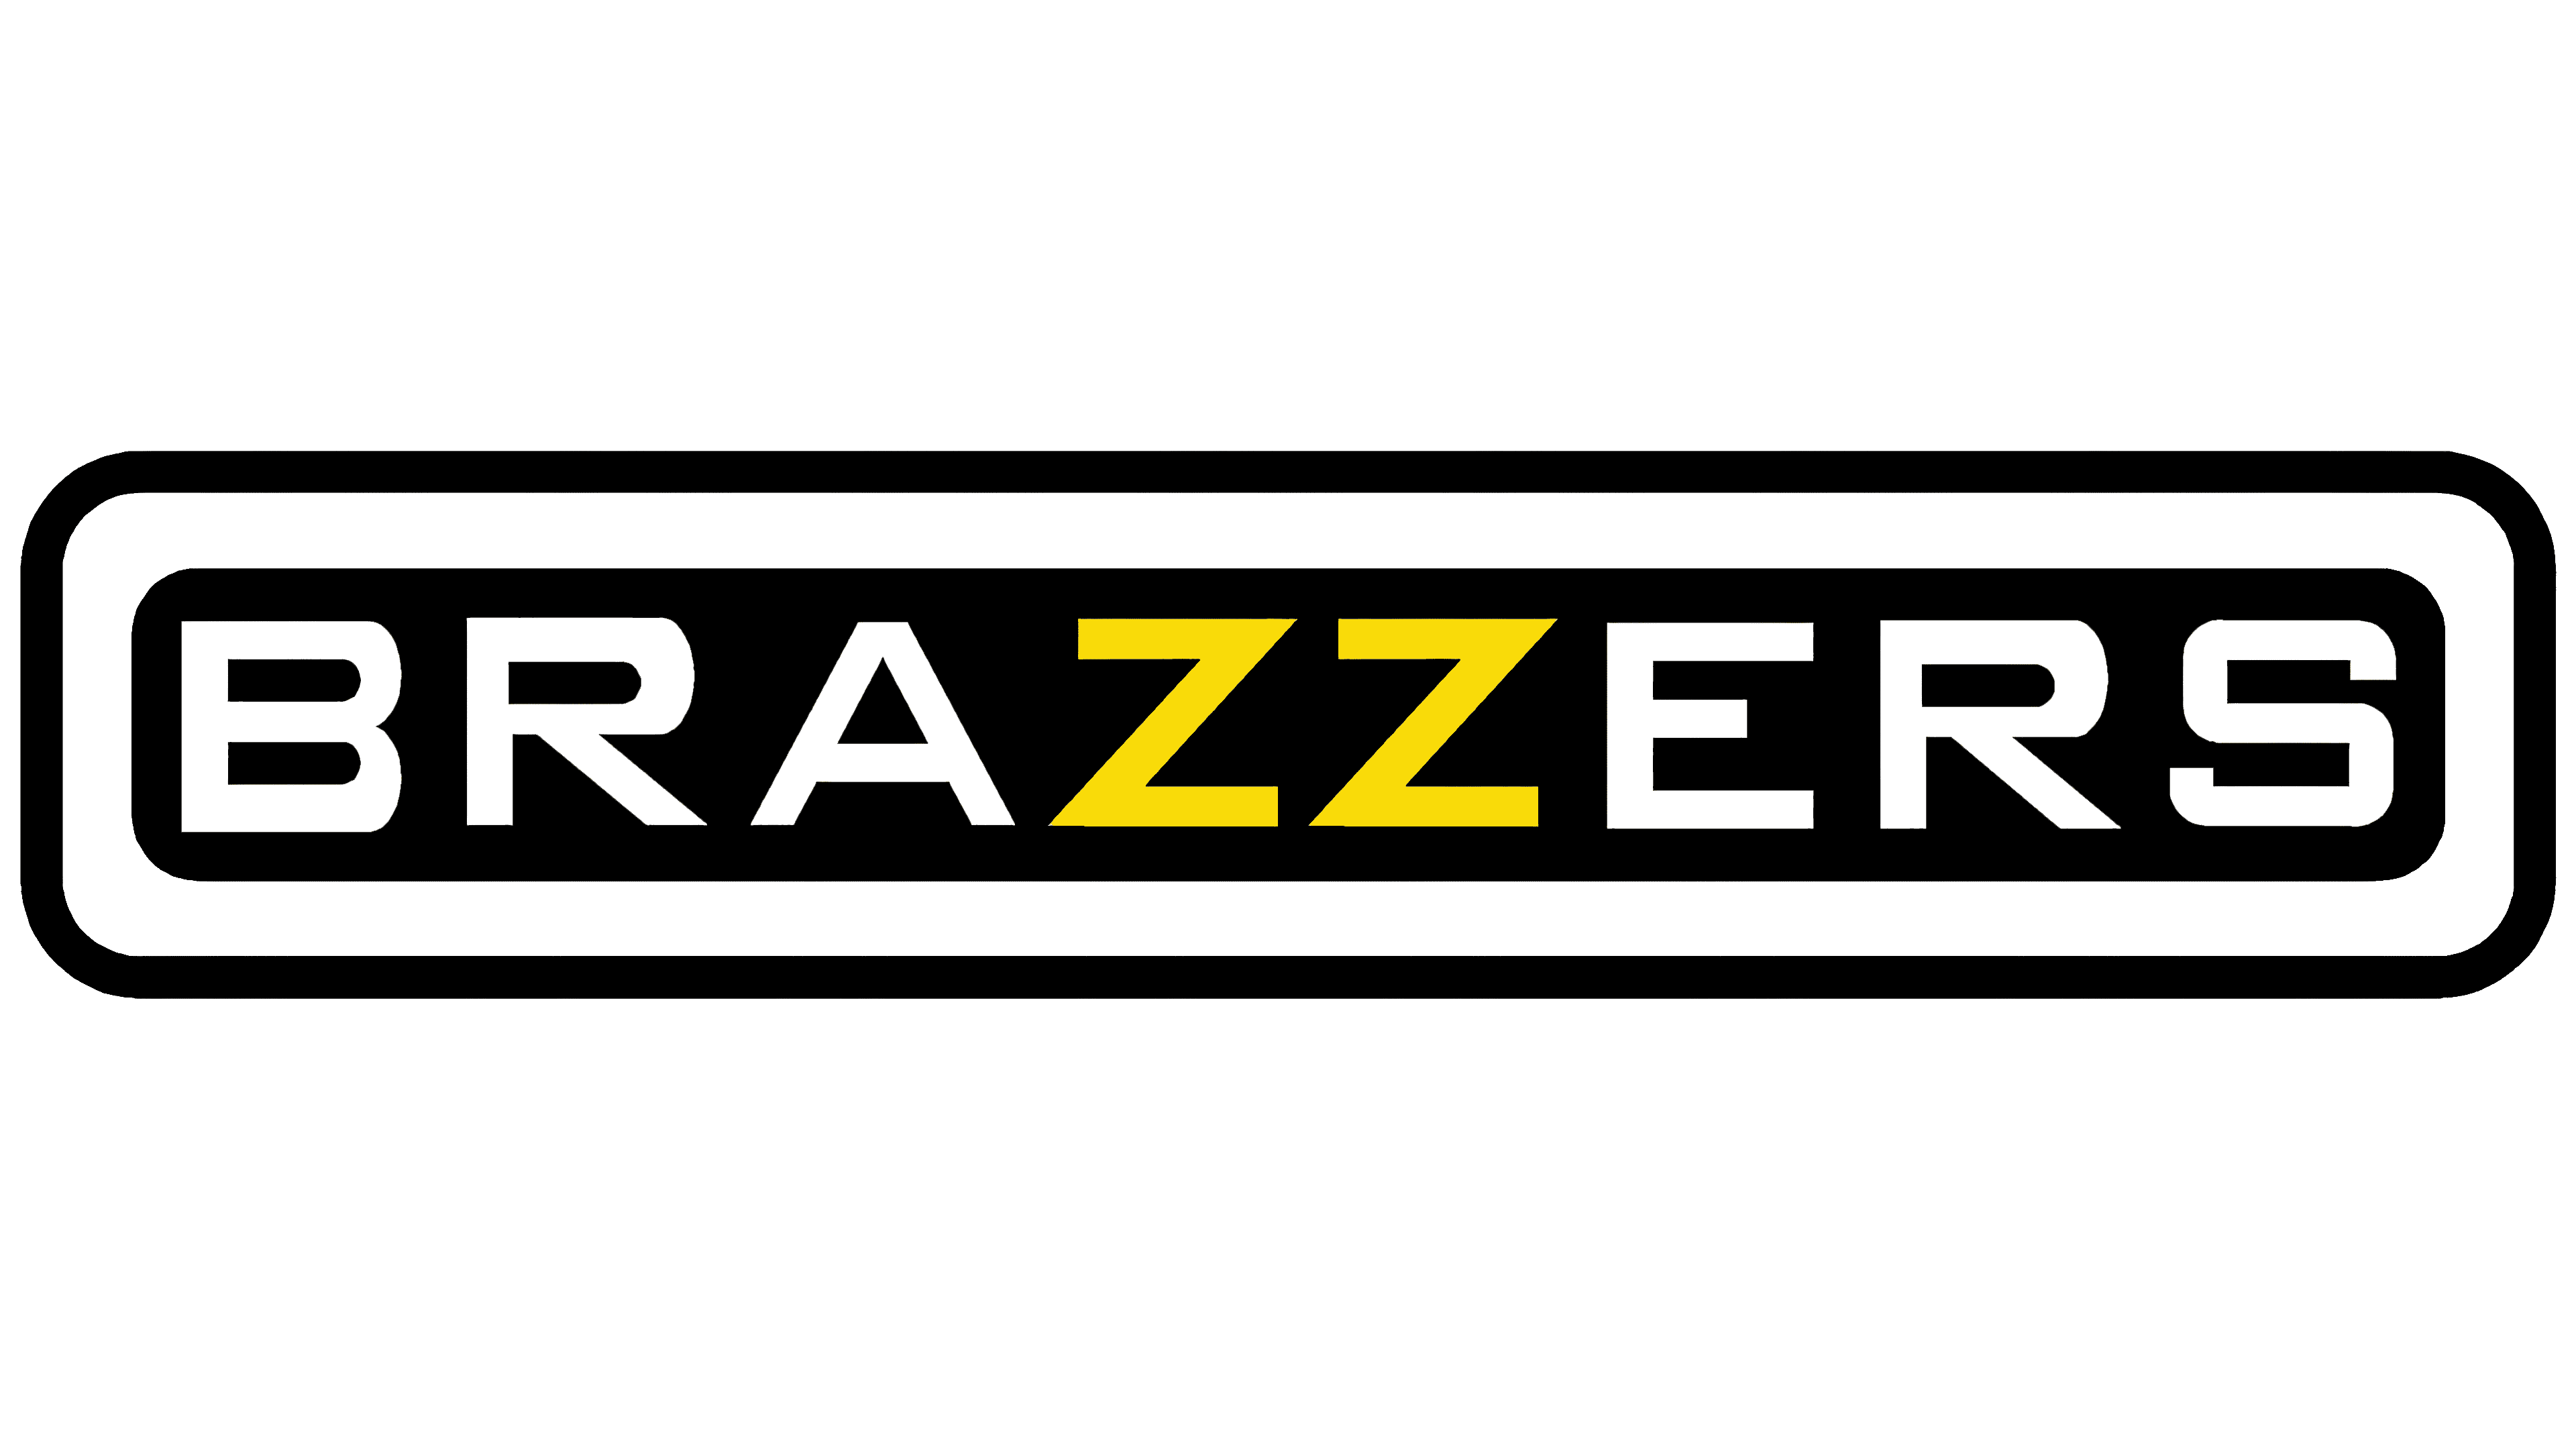 Todas las versiones del logotipo de Brazzers utilizan una fuente llamada Ba...